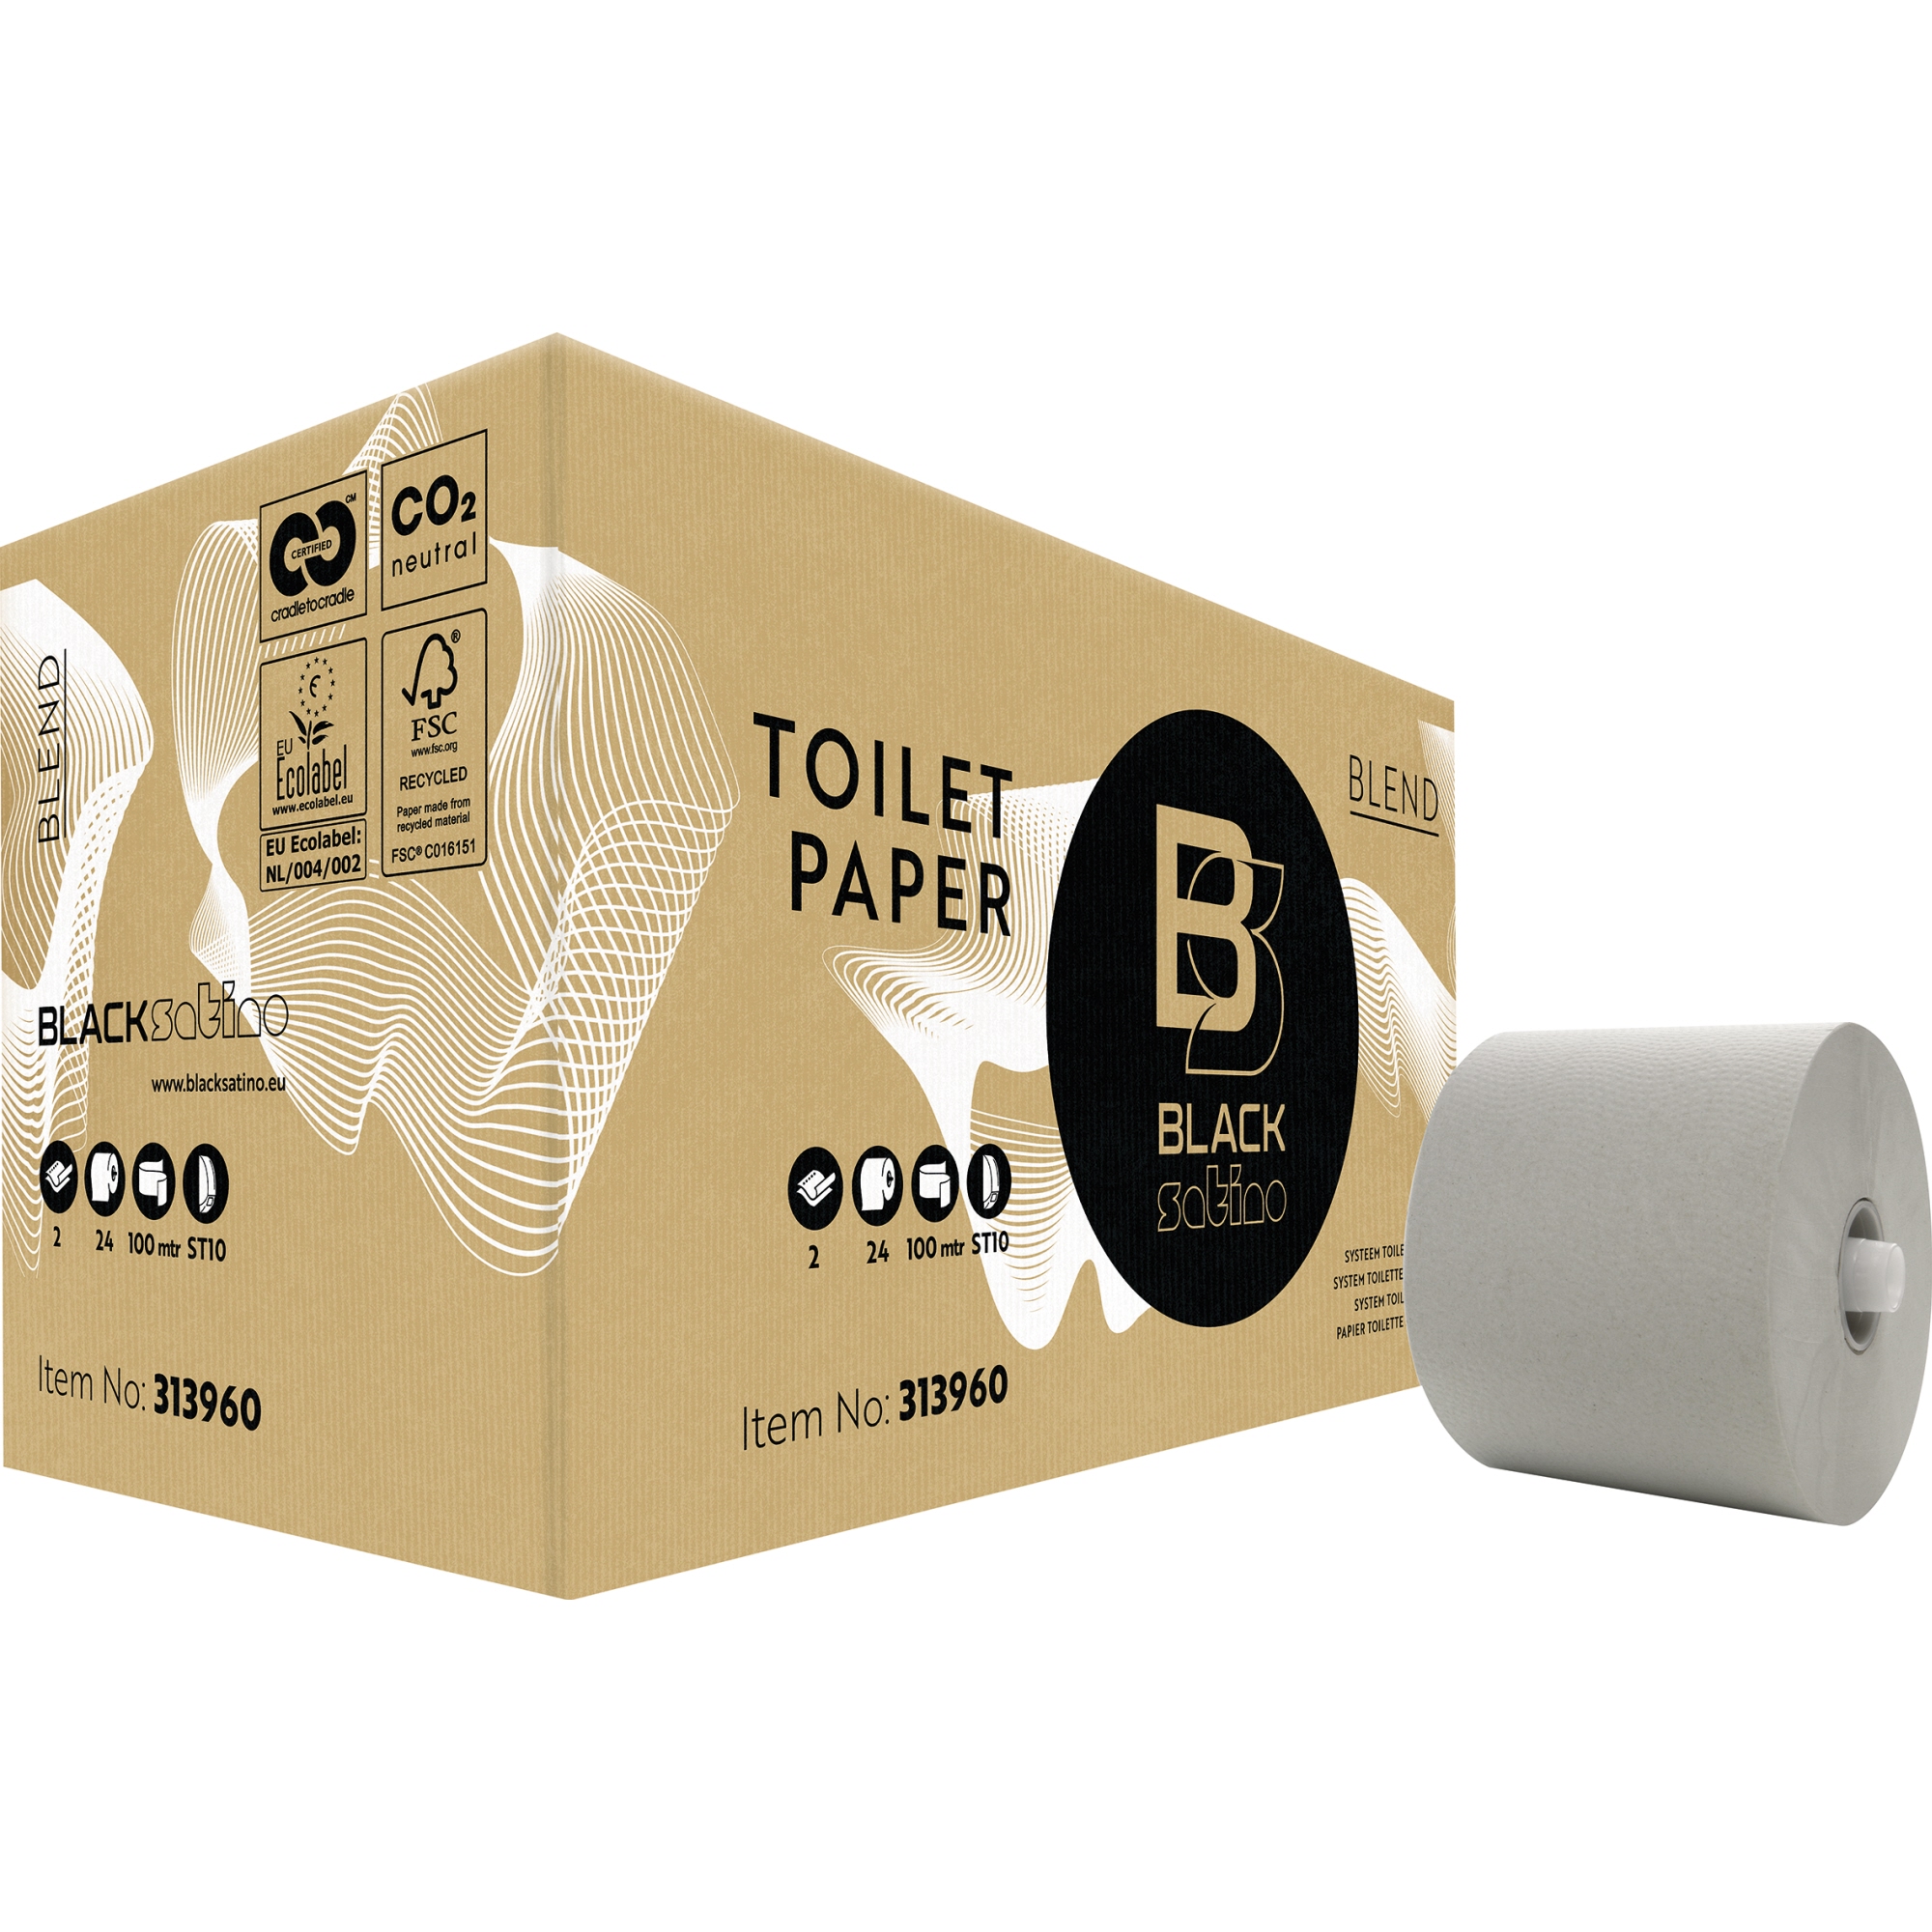 BlackSatino Toilettenpapier Blend ST10 2-lagig 24er Pack